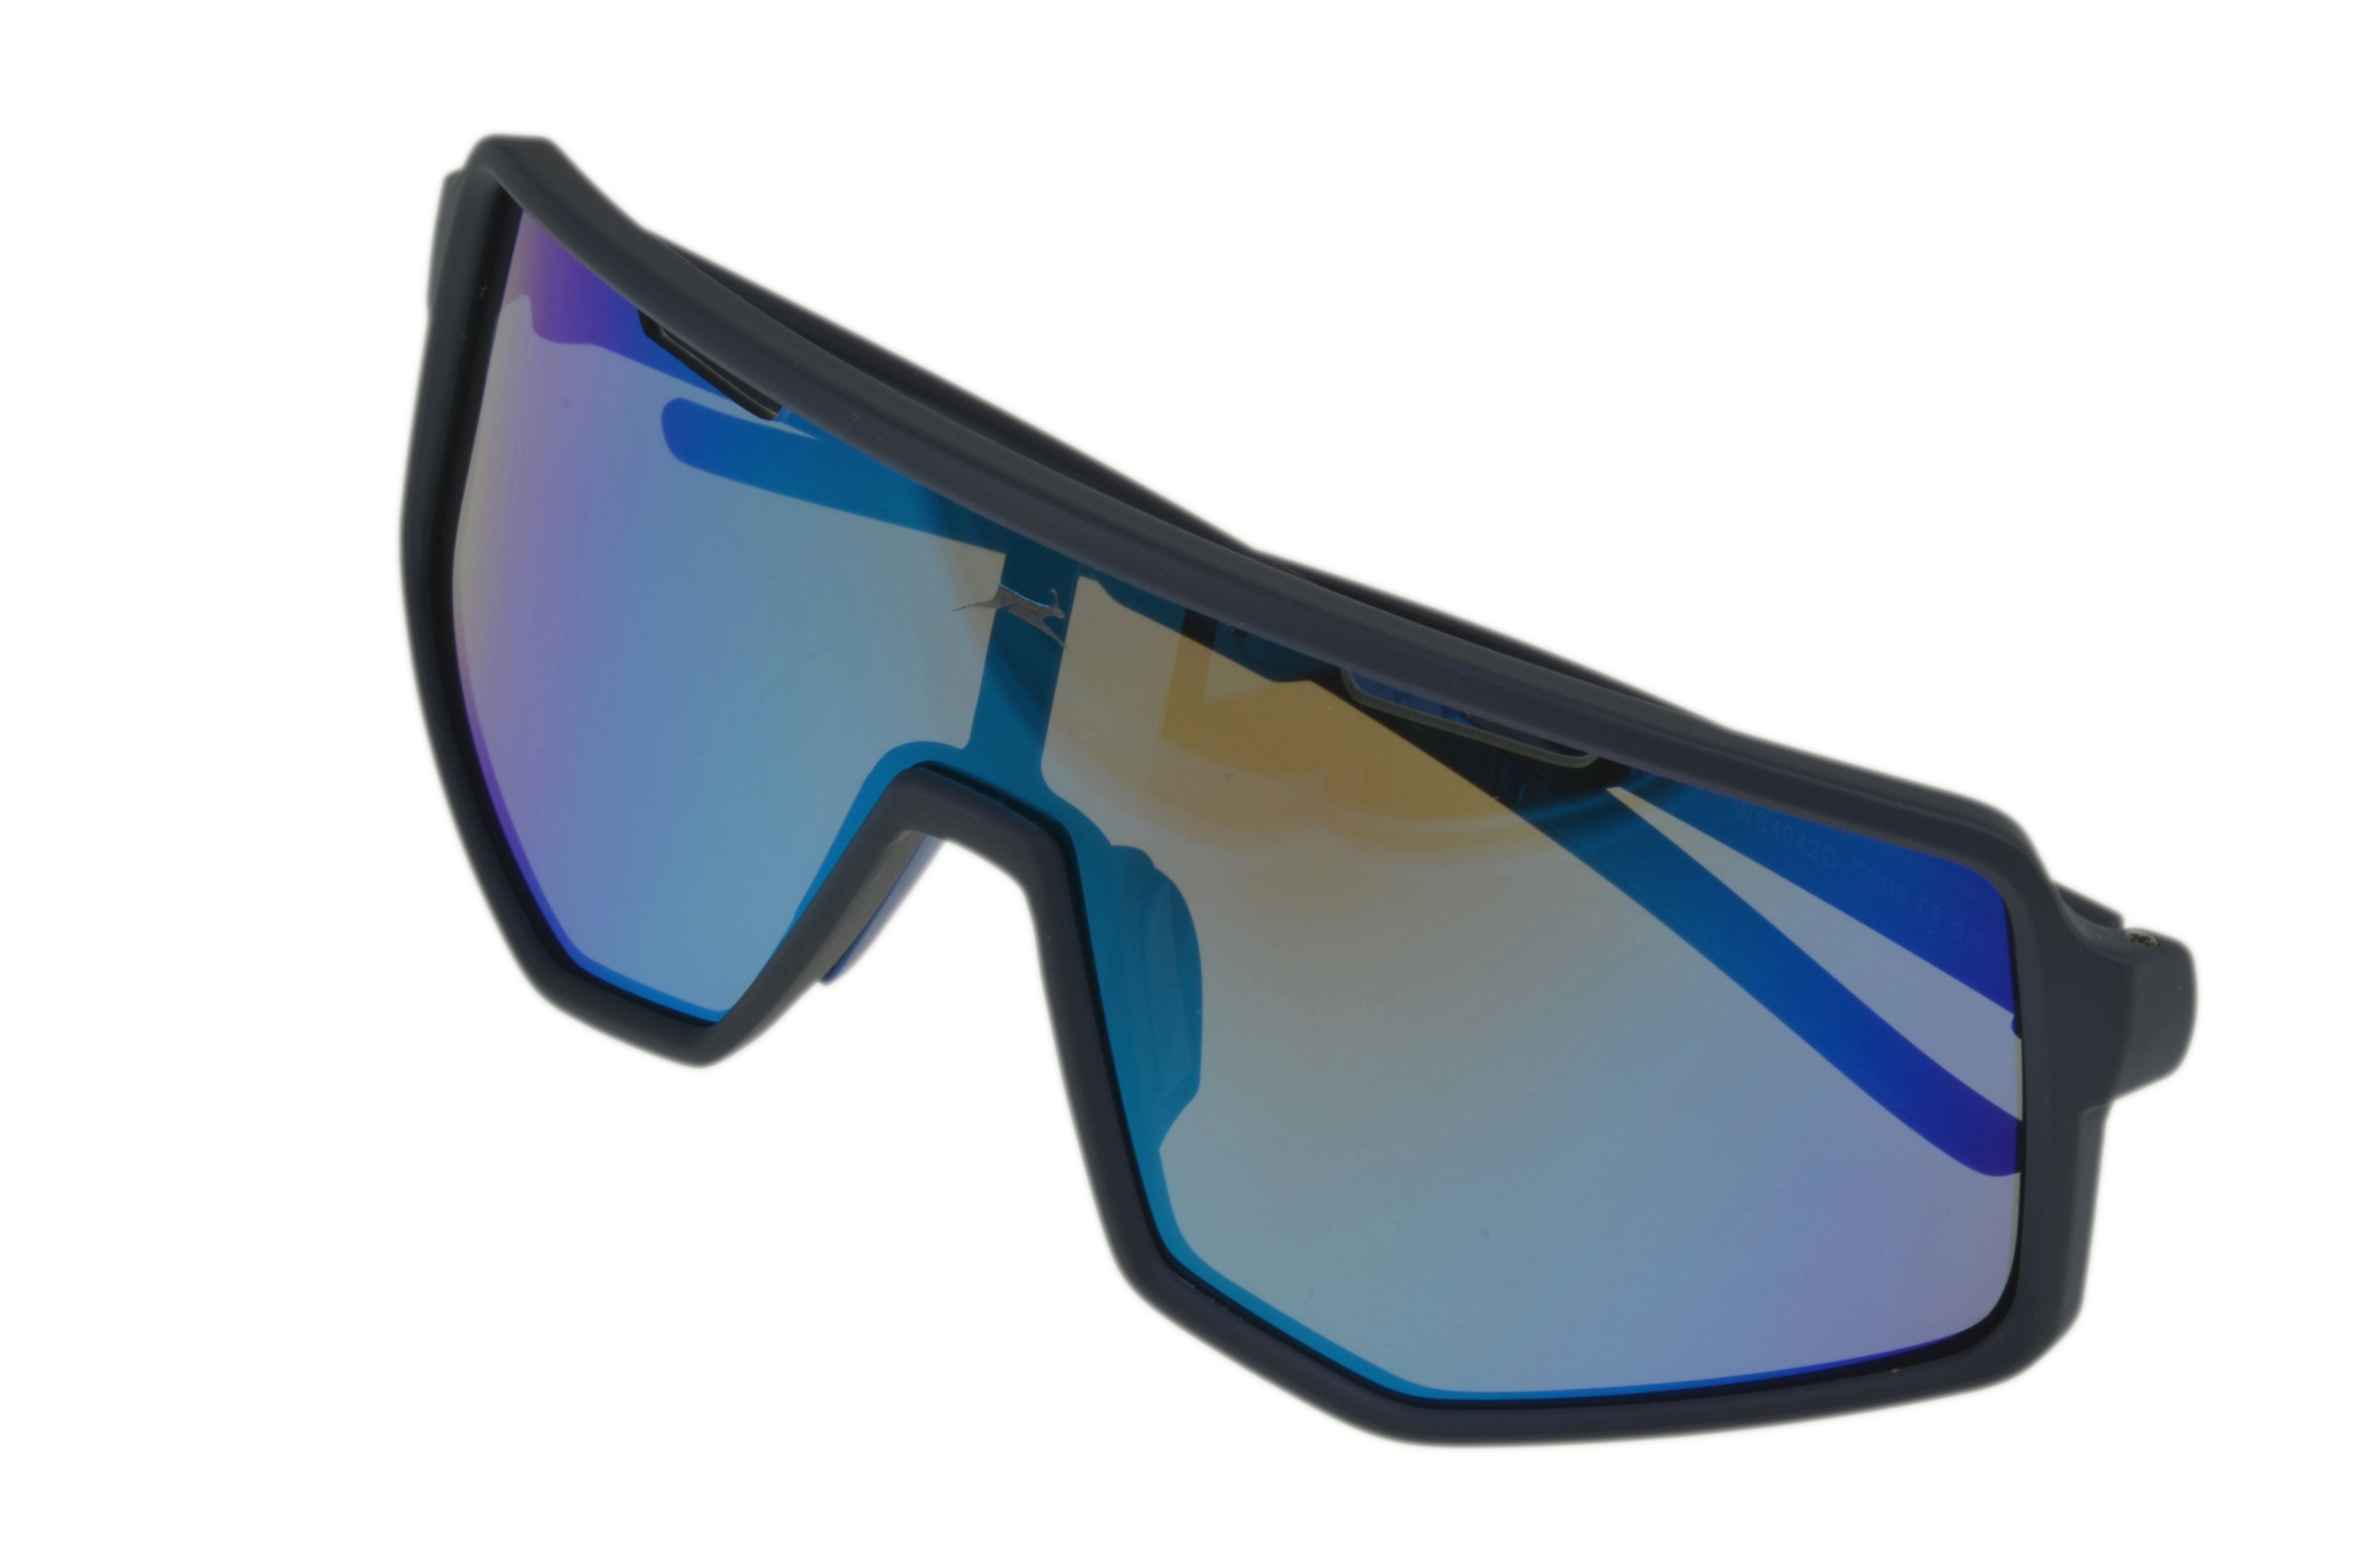 WS4042 Sonnenbrille Fahrradbrille Skibrille schwarz-blau, Gamswild TR90 Sonnenbrille Unisex Unisex, lila, schwarz-rot, Damen Herren grün